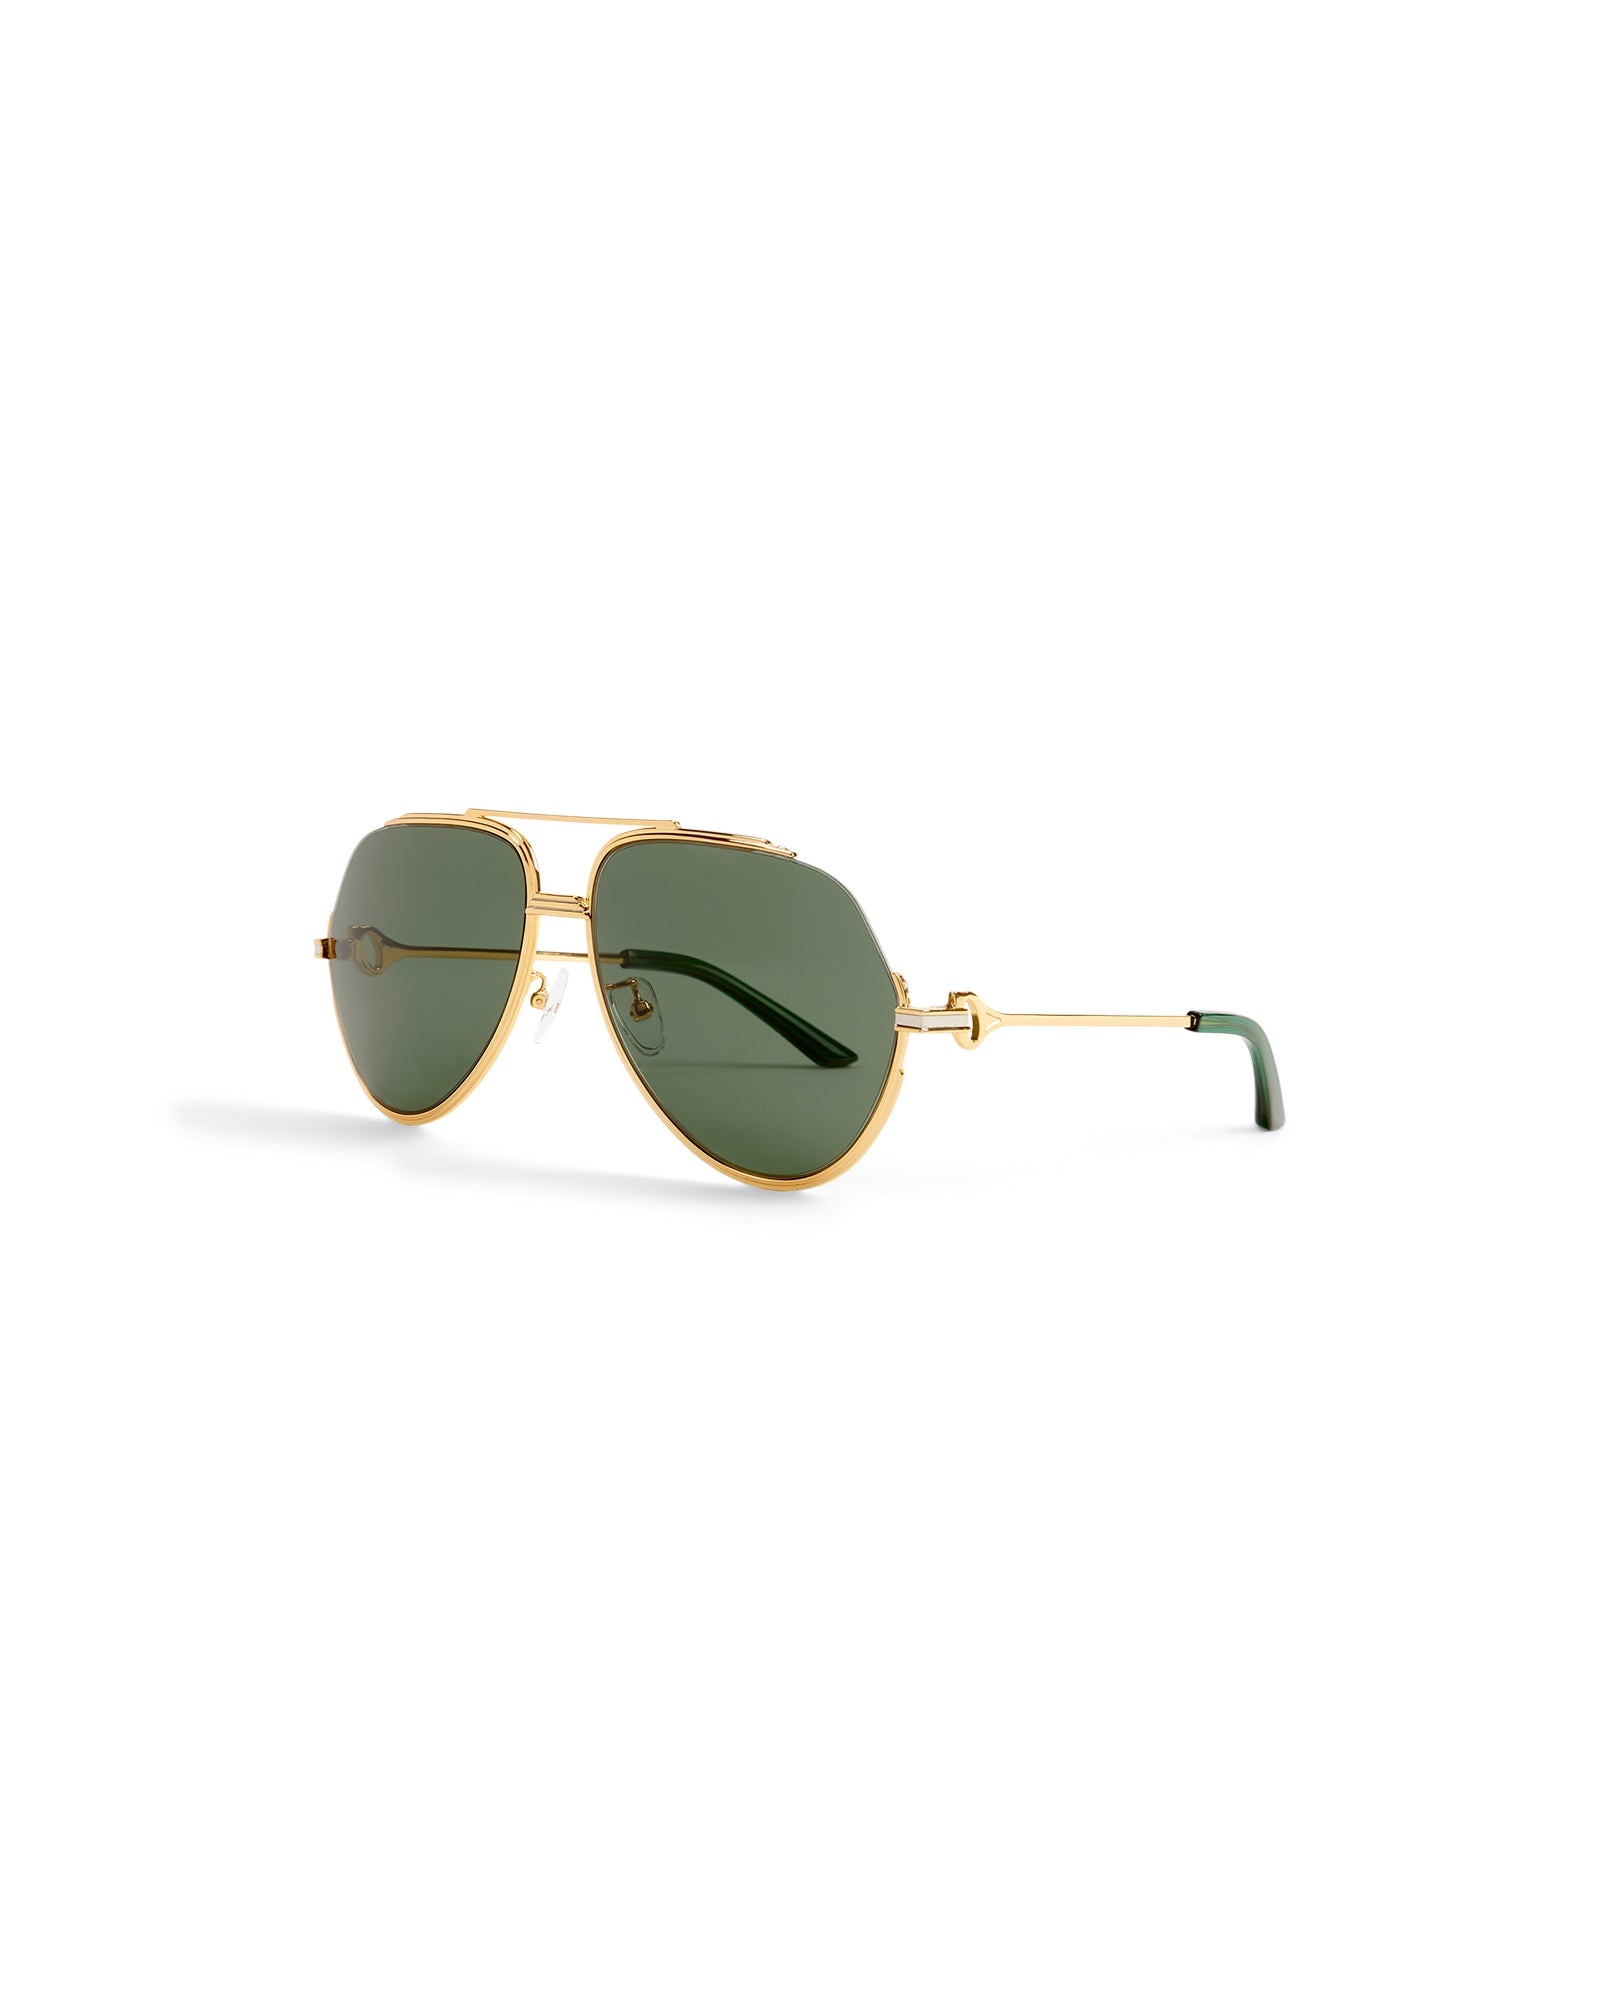 Green & Gold The Albán Sunglasses - 1